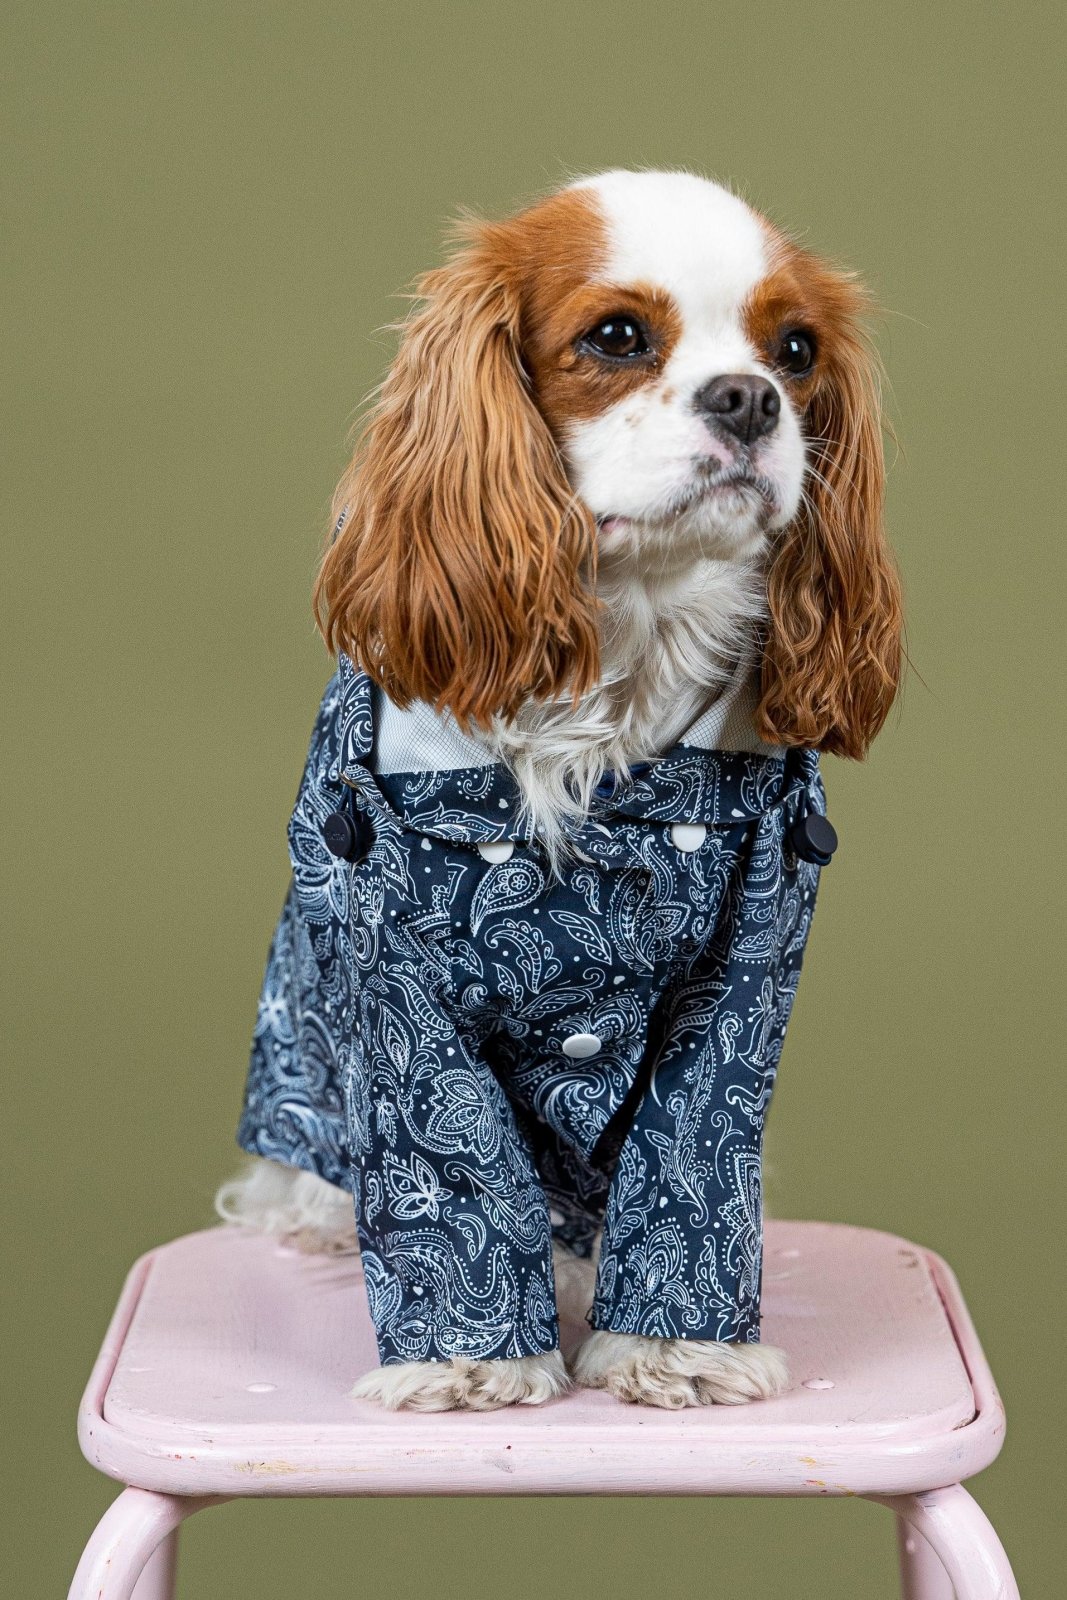 Boulogne - Raincoat for dogs - Flotte #couleur_paisley